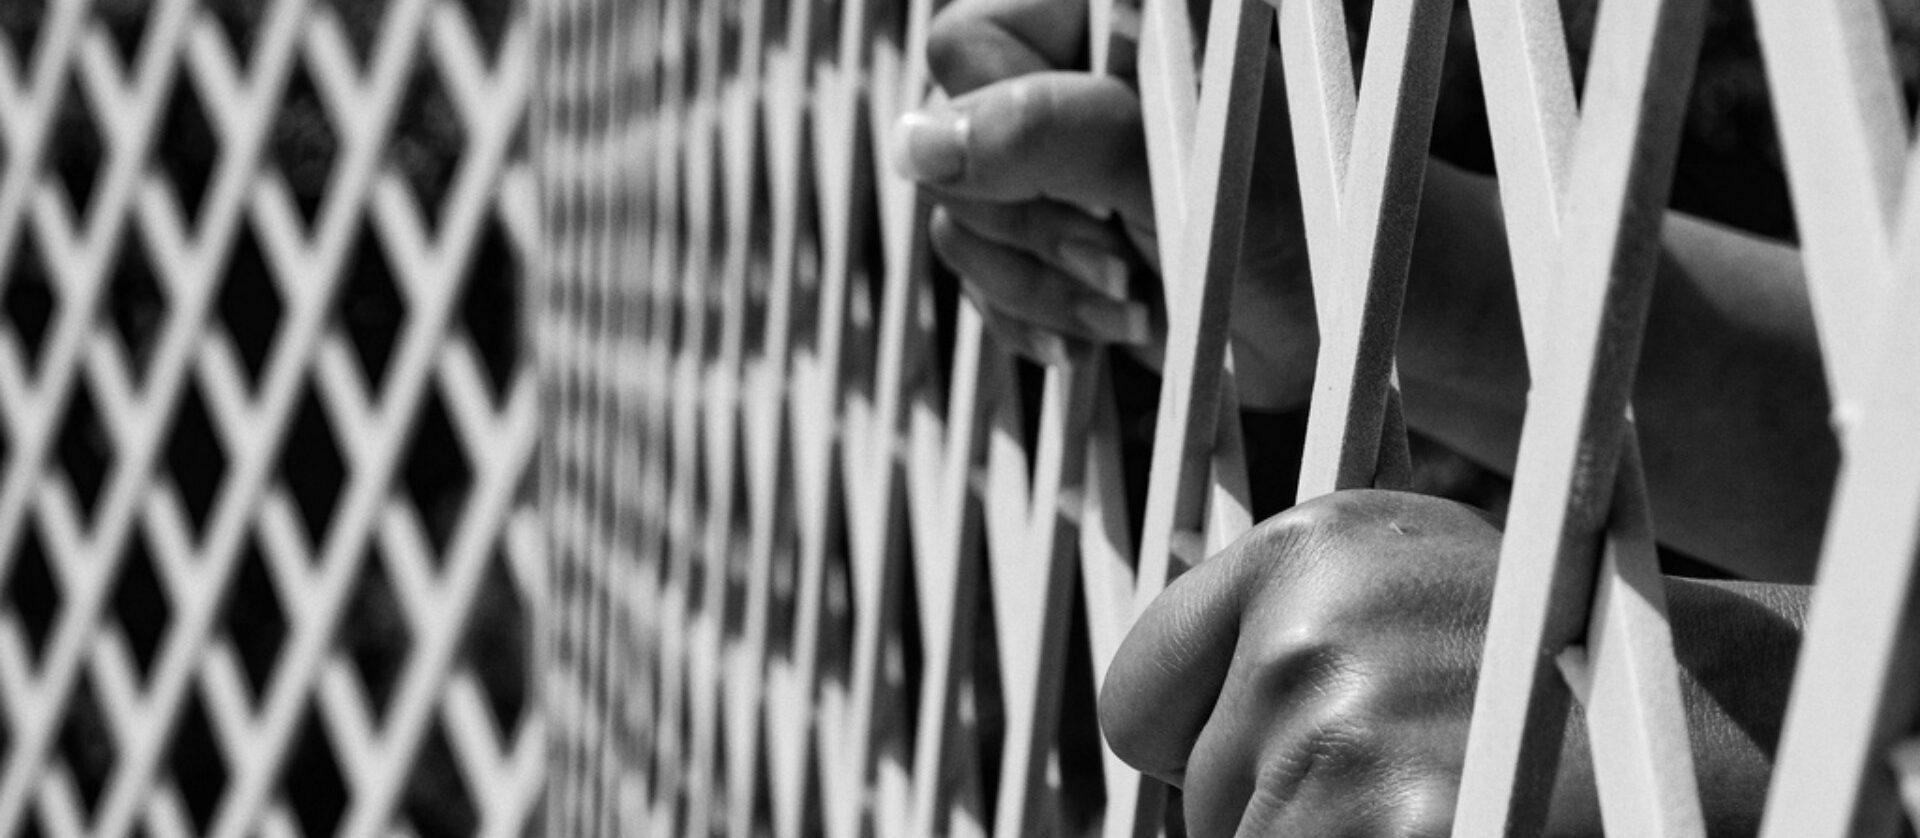 Le Vatican a-t-il les moyens d'incarcérer des personnes? | © Illustration:Tiago Pinheiro/Flickr/CC BY-NC-ND 2.0